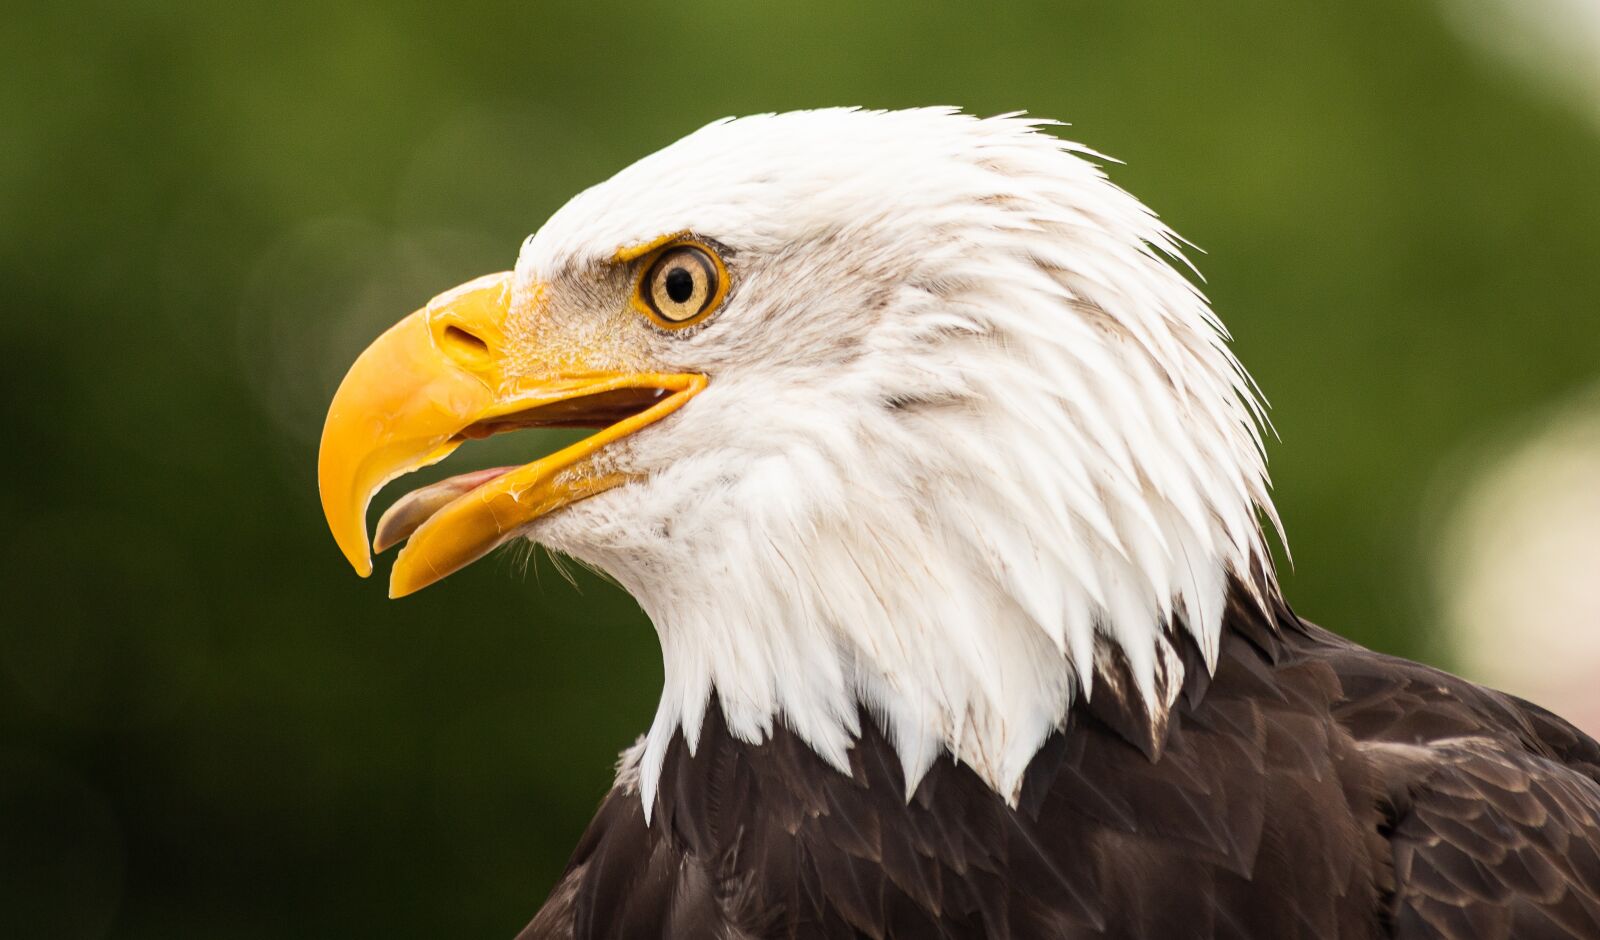 Canon EOS 6D Mark II sample photo. Bald eagle, bird, bird photography